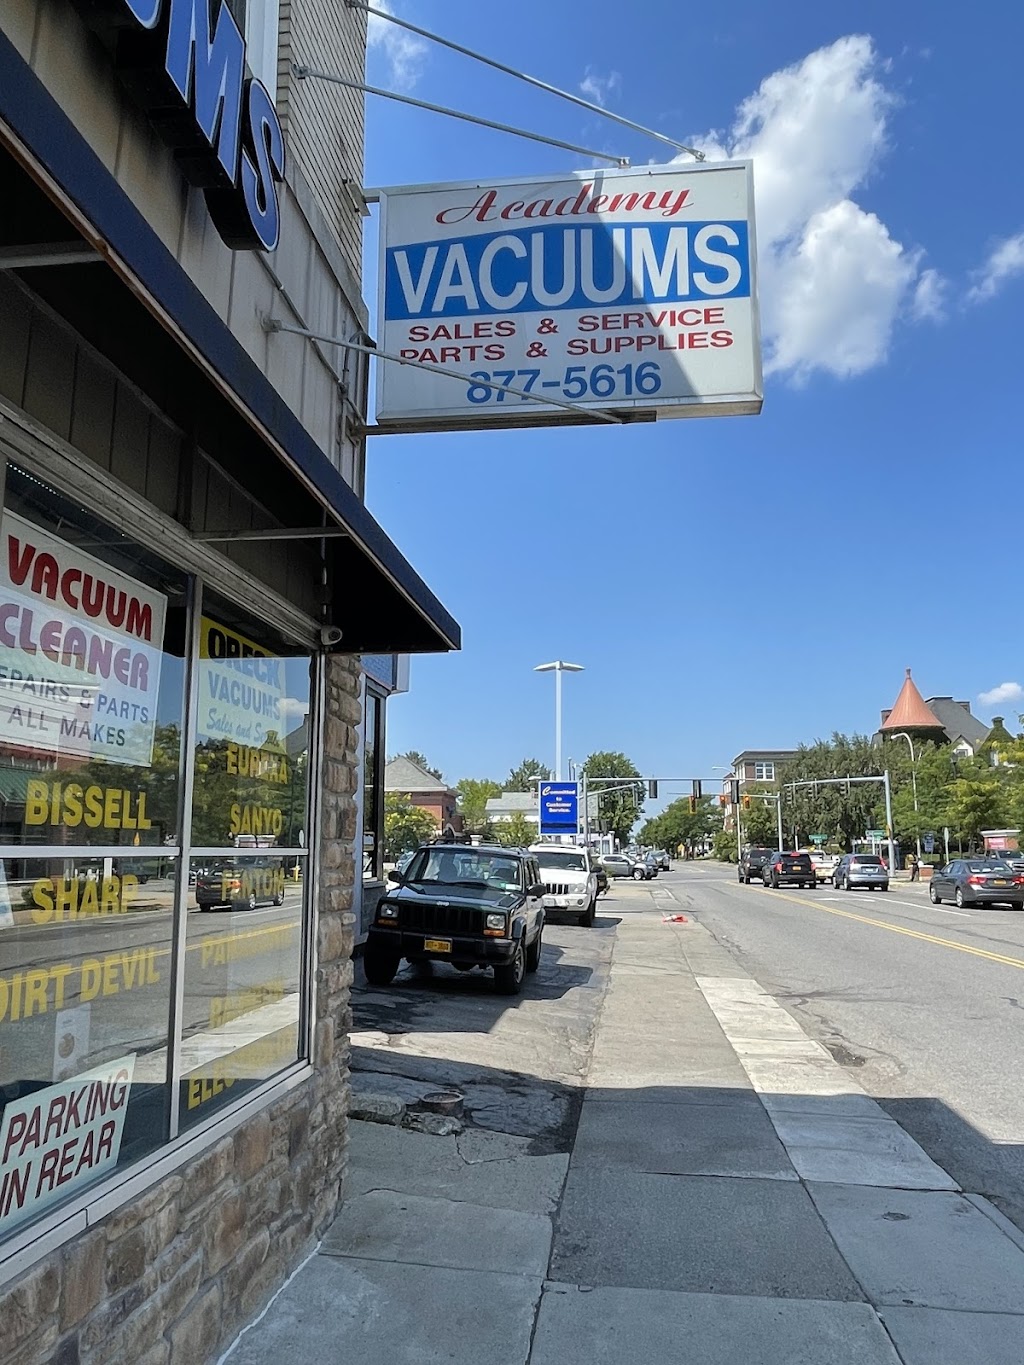 Academy Vacuums | 1366 Kenmore Ave, Buffalo, NY 14216, USA | Phone: (716) 877-5616